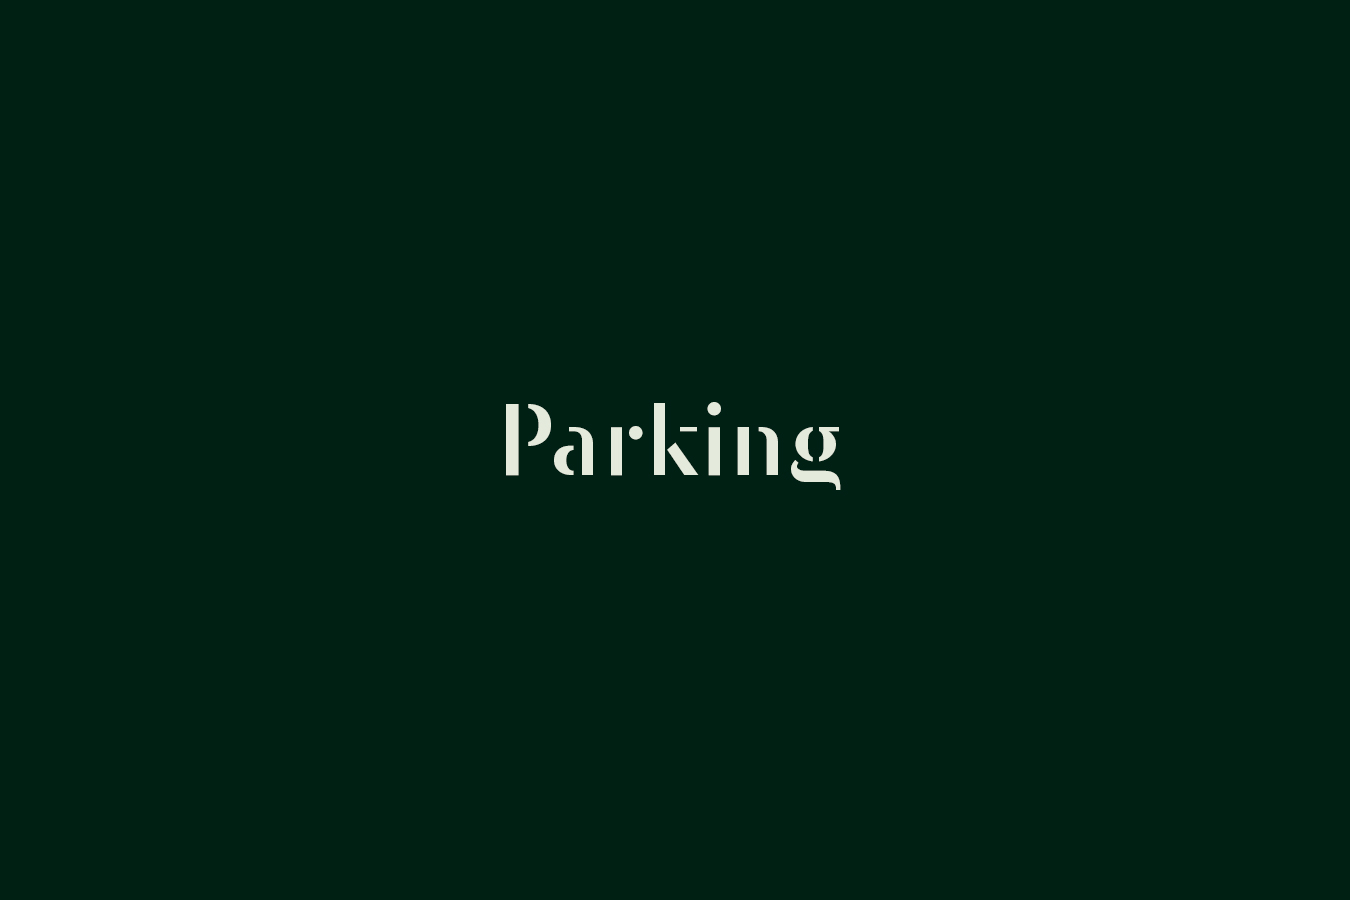 domaine-de-ronchinne-a-propos-infos-pratiques-parking-01.jpg